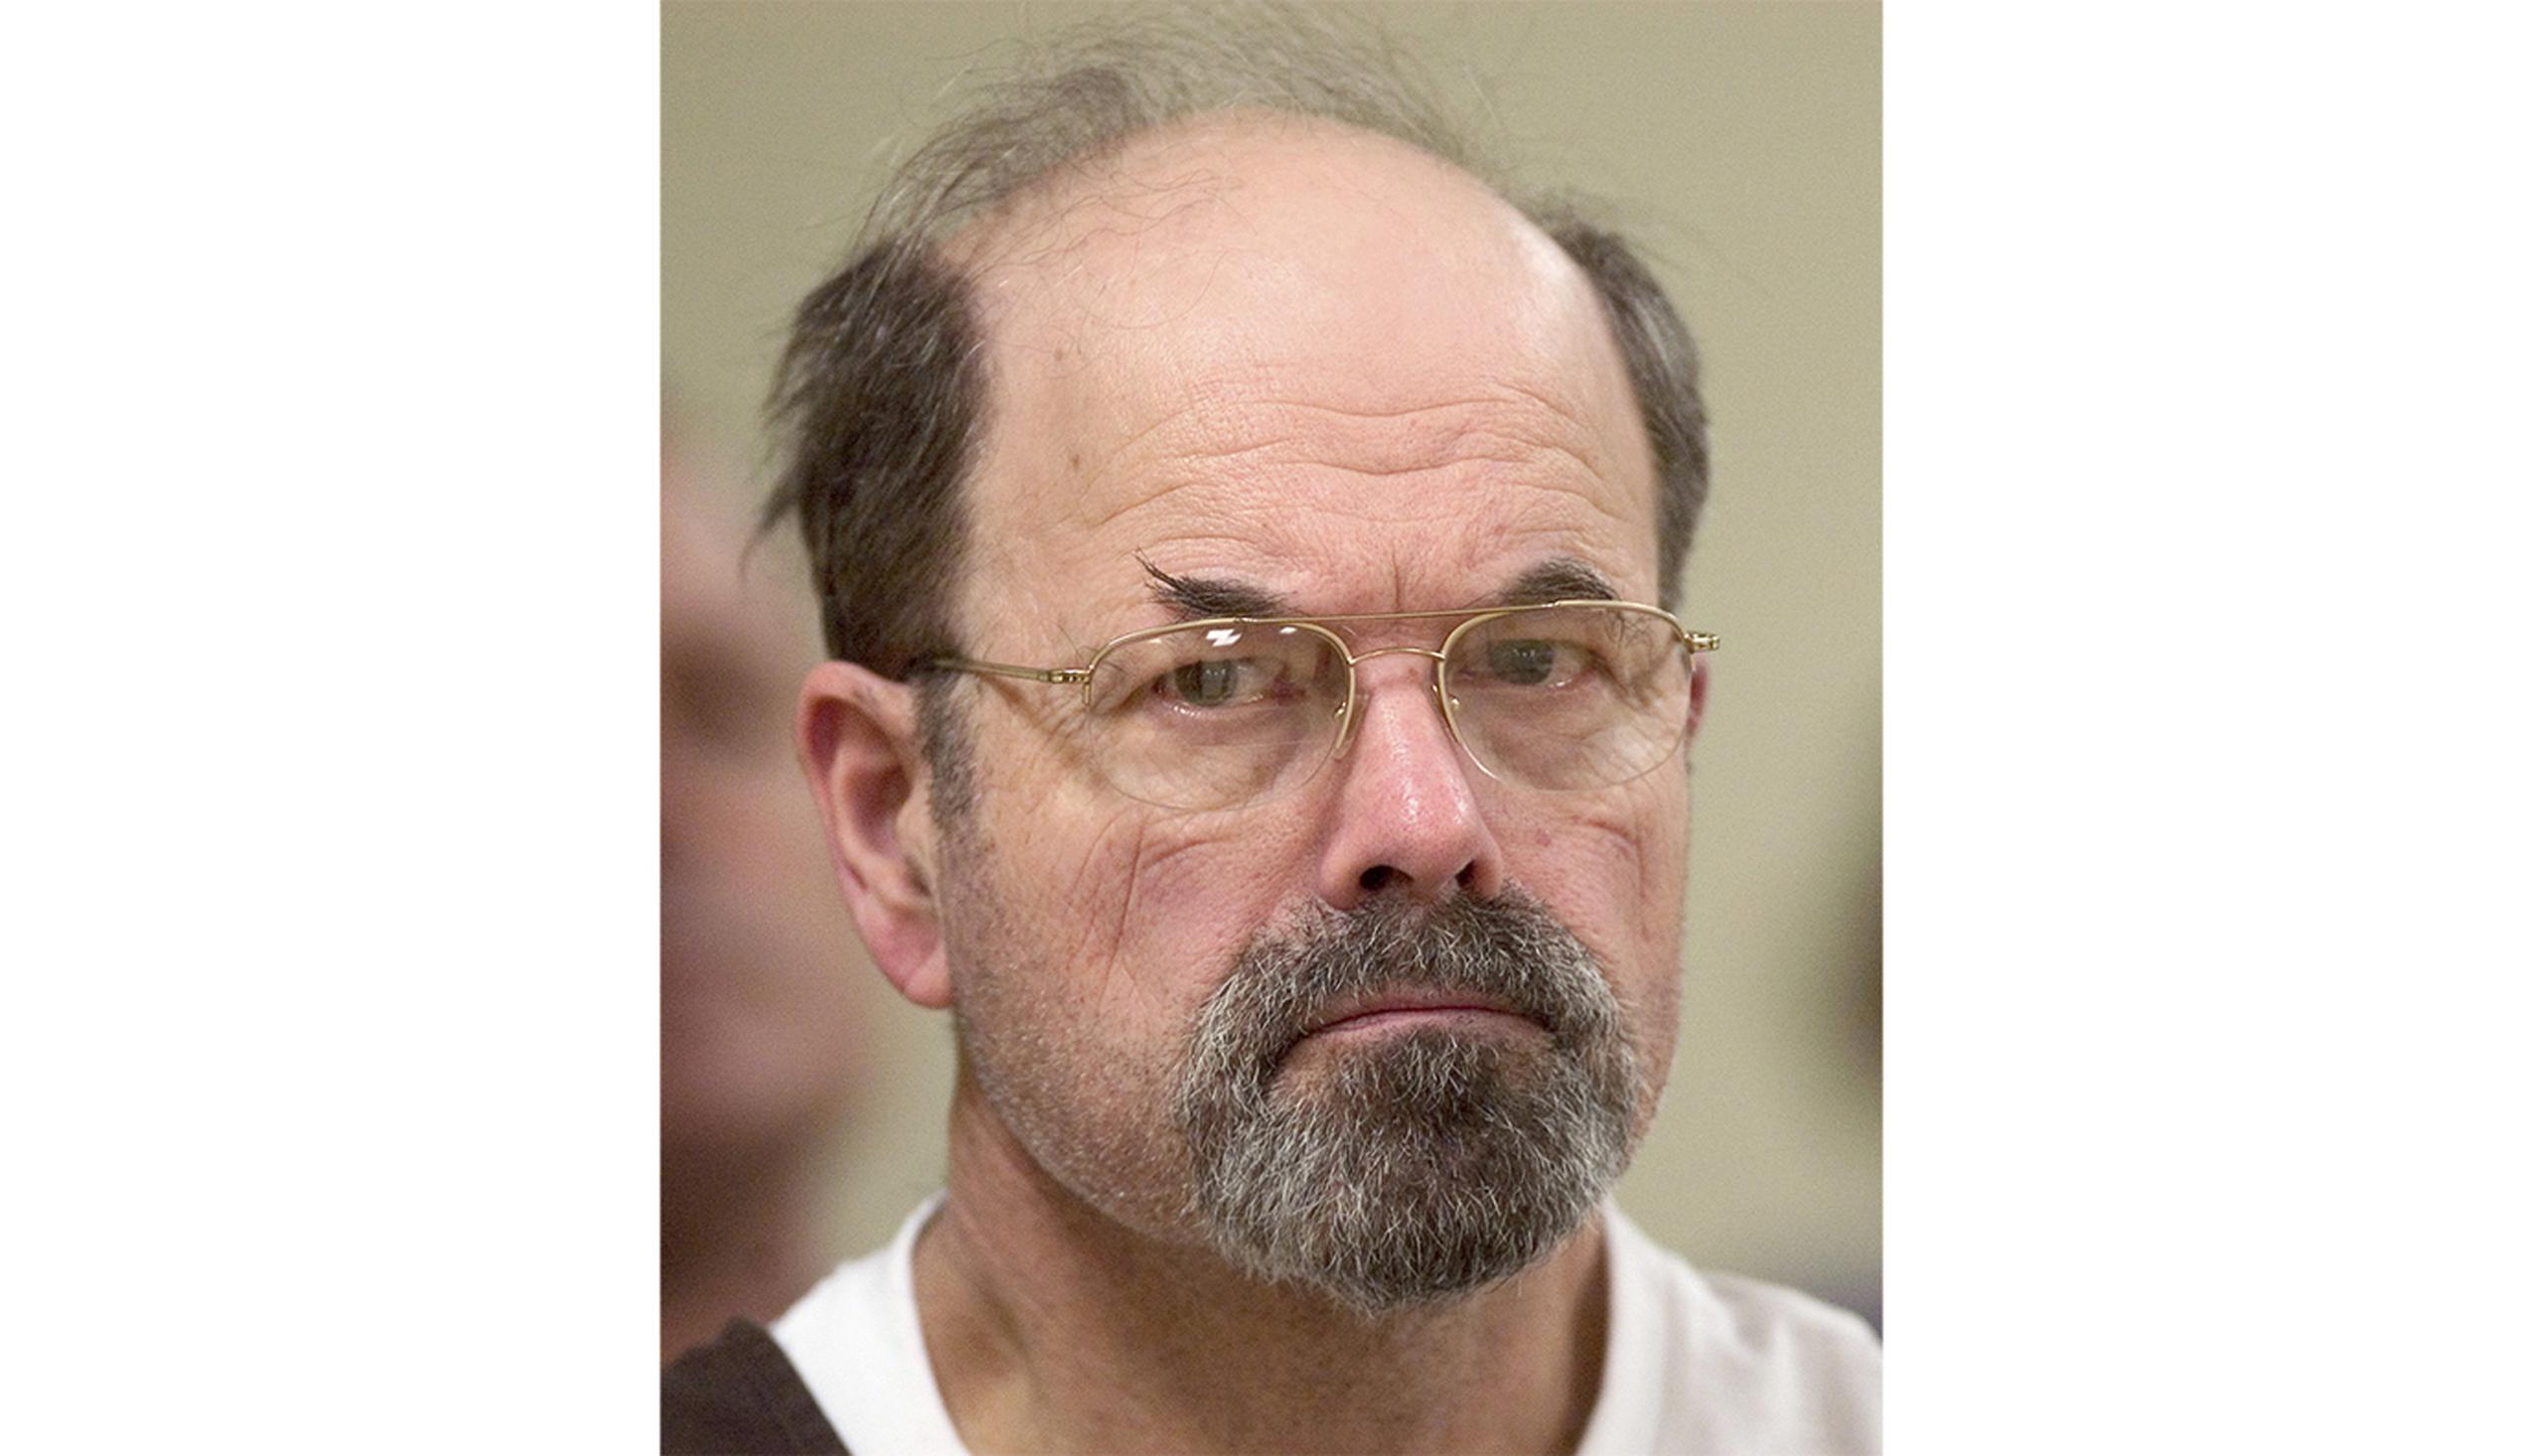 Aunque confesó 10 asesinatos ocurridos entre 1976 y 1991, Dennis Rader no fue arrestado hasta el 2005, por lo que se sospecha, pudo haber cometido mas crímenes.